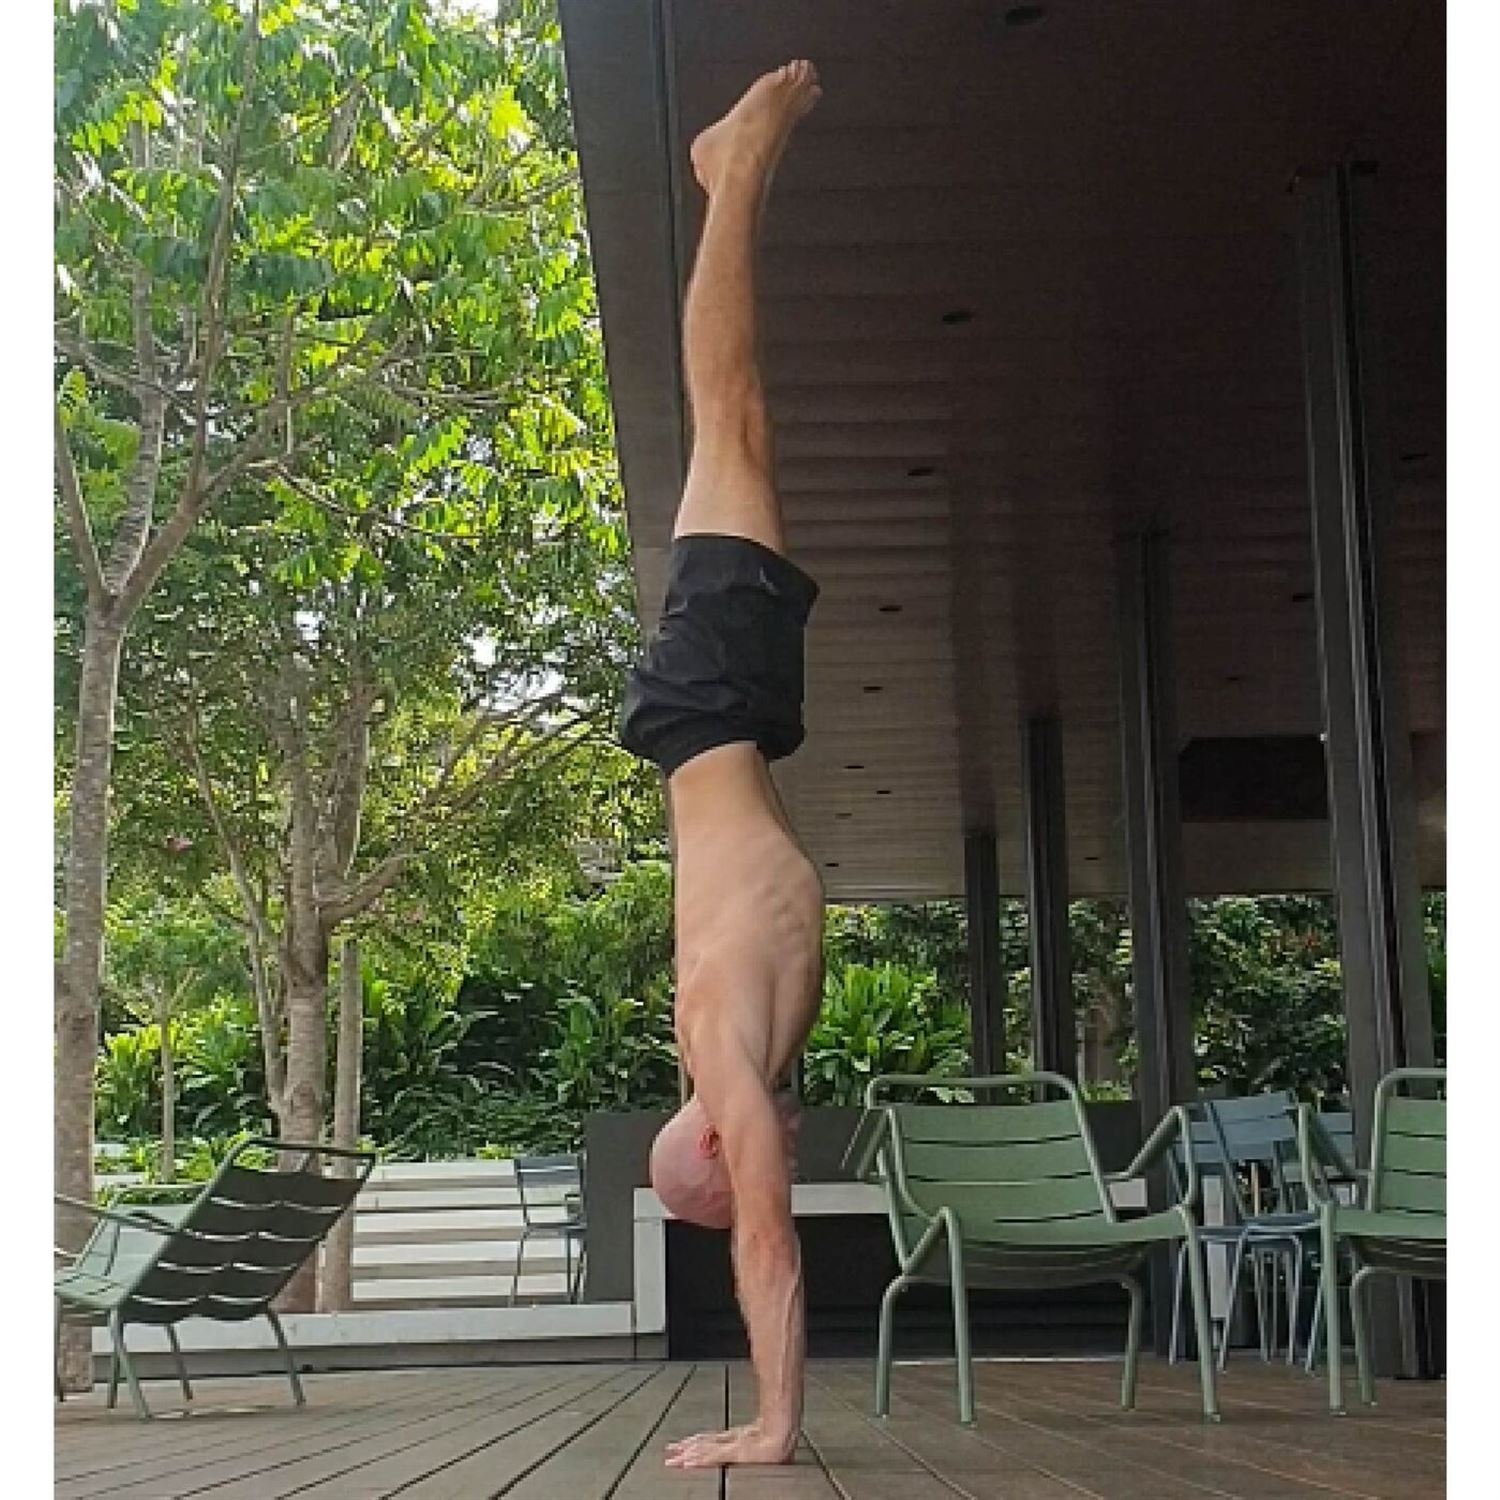 Gymnastics and handstands